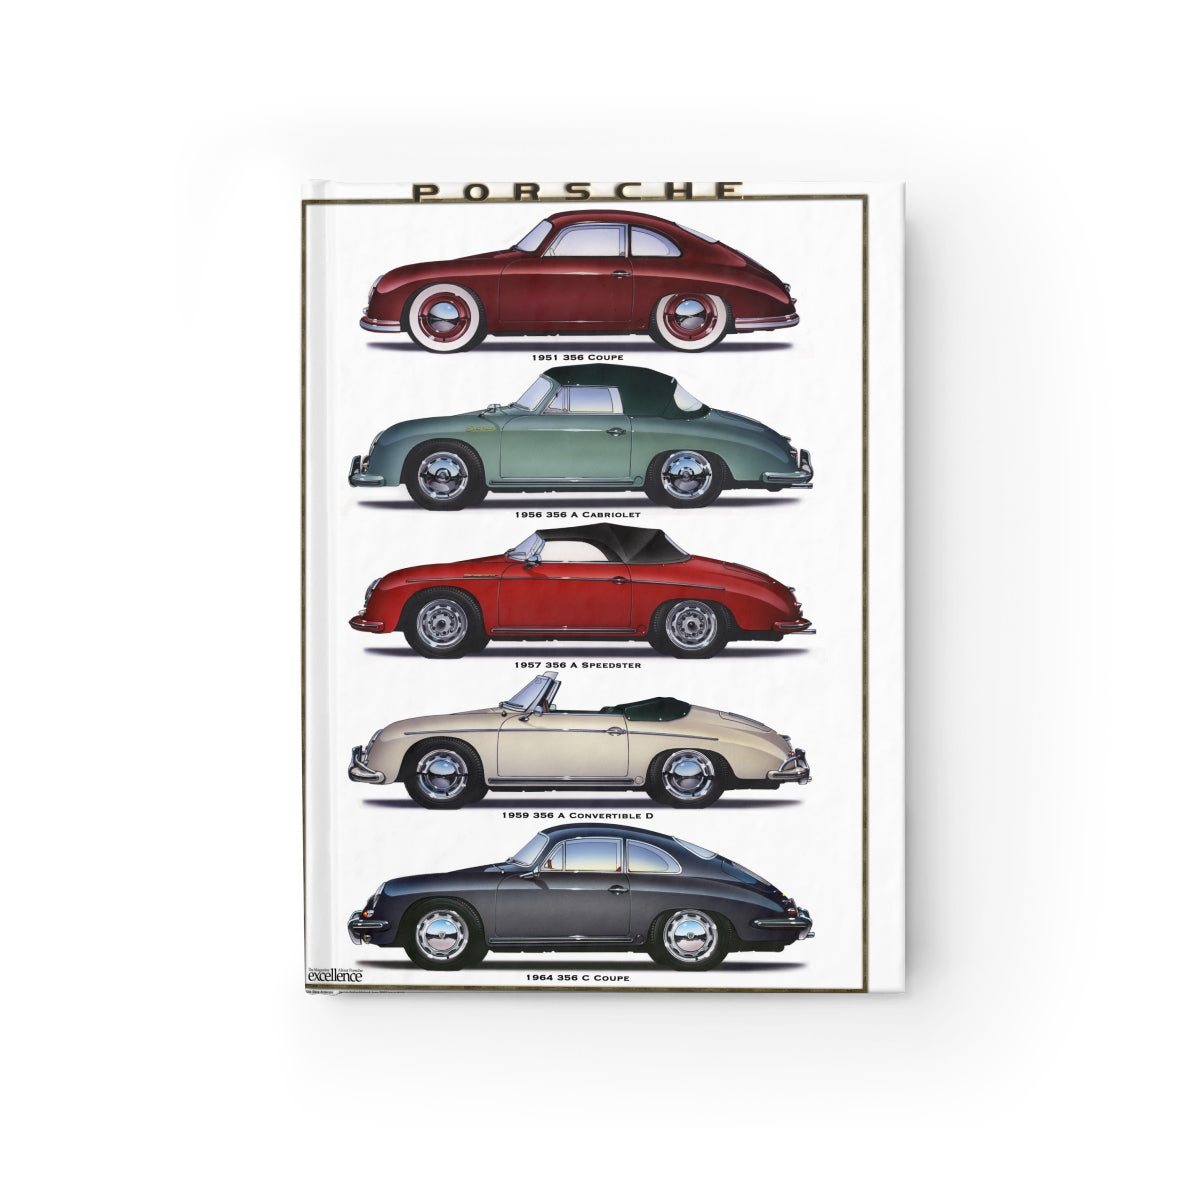 356 Porsche Journal - Ruled Line